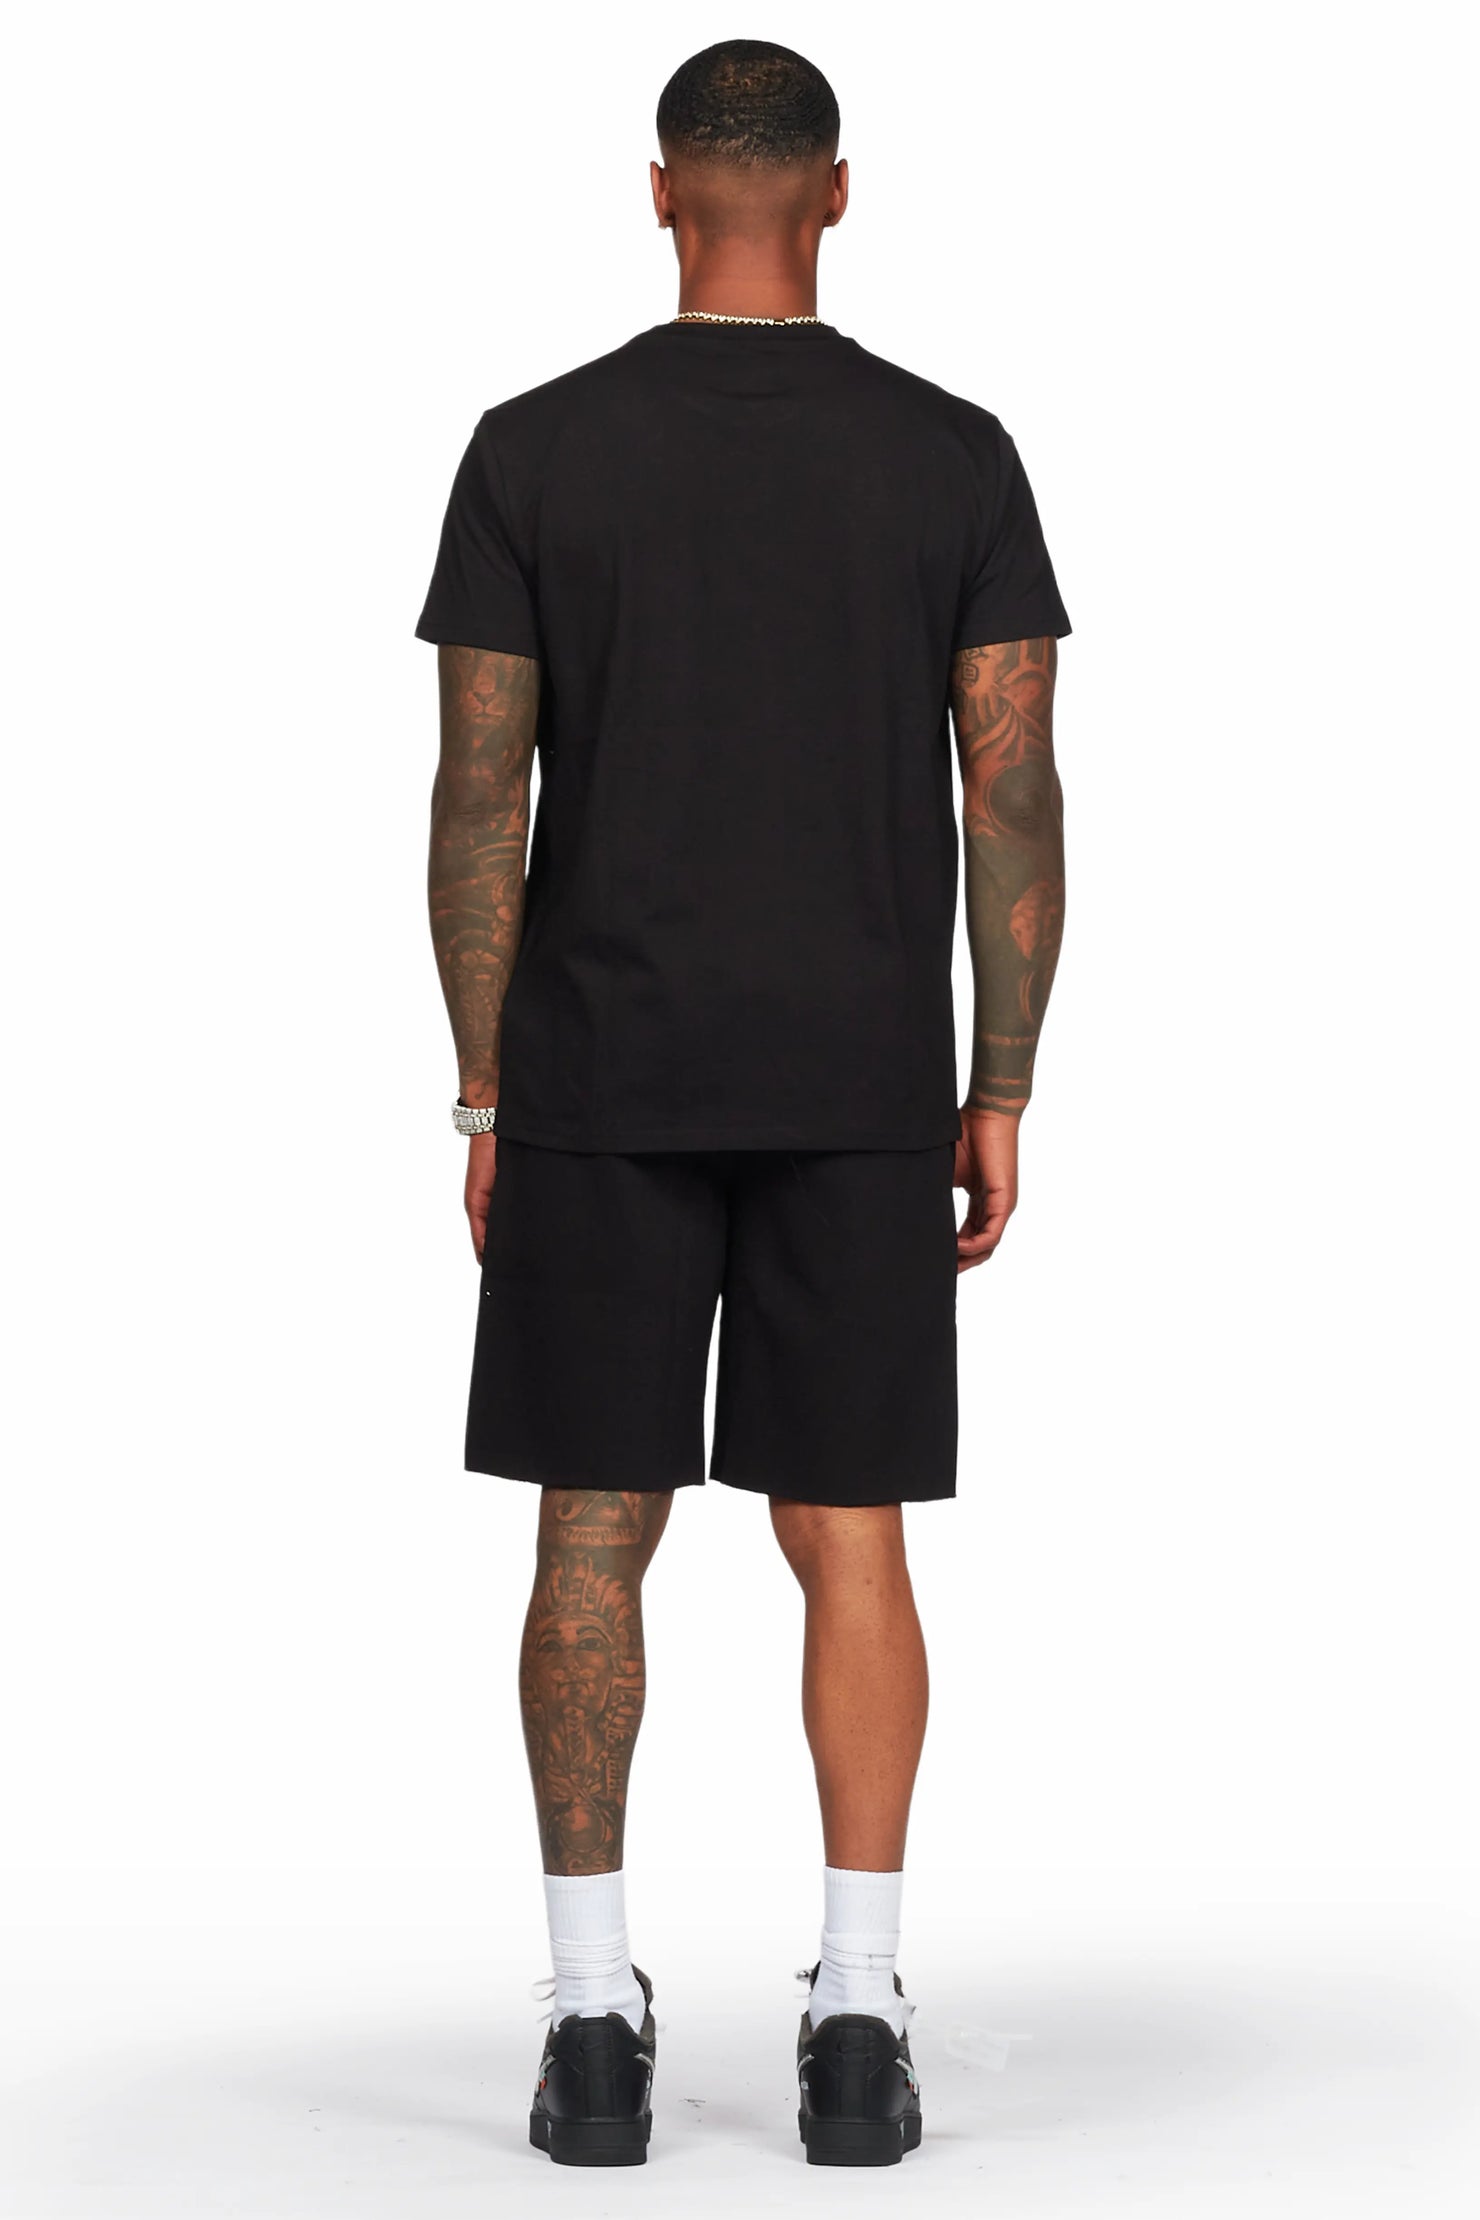 Murdra Black T-Shirt/Short Set